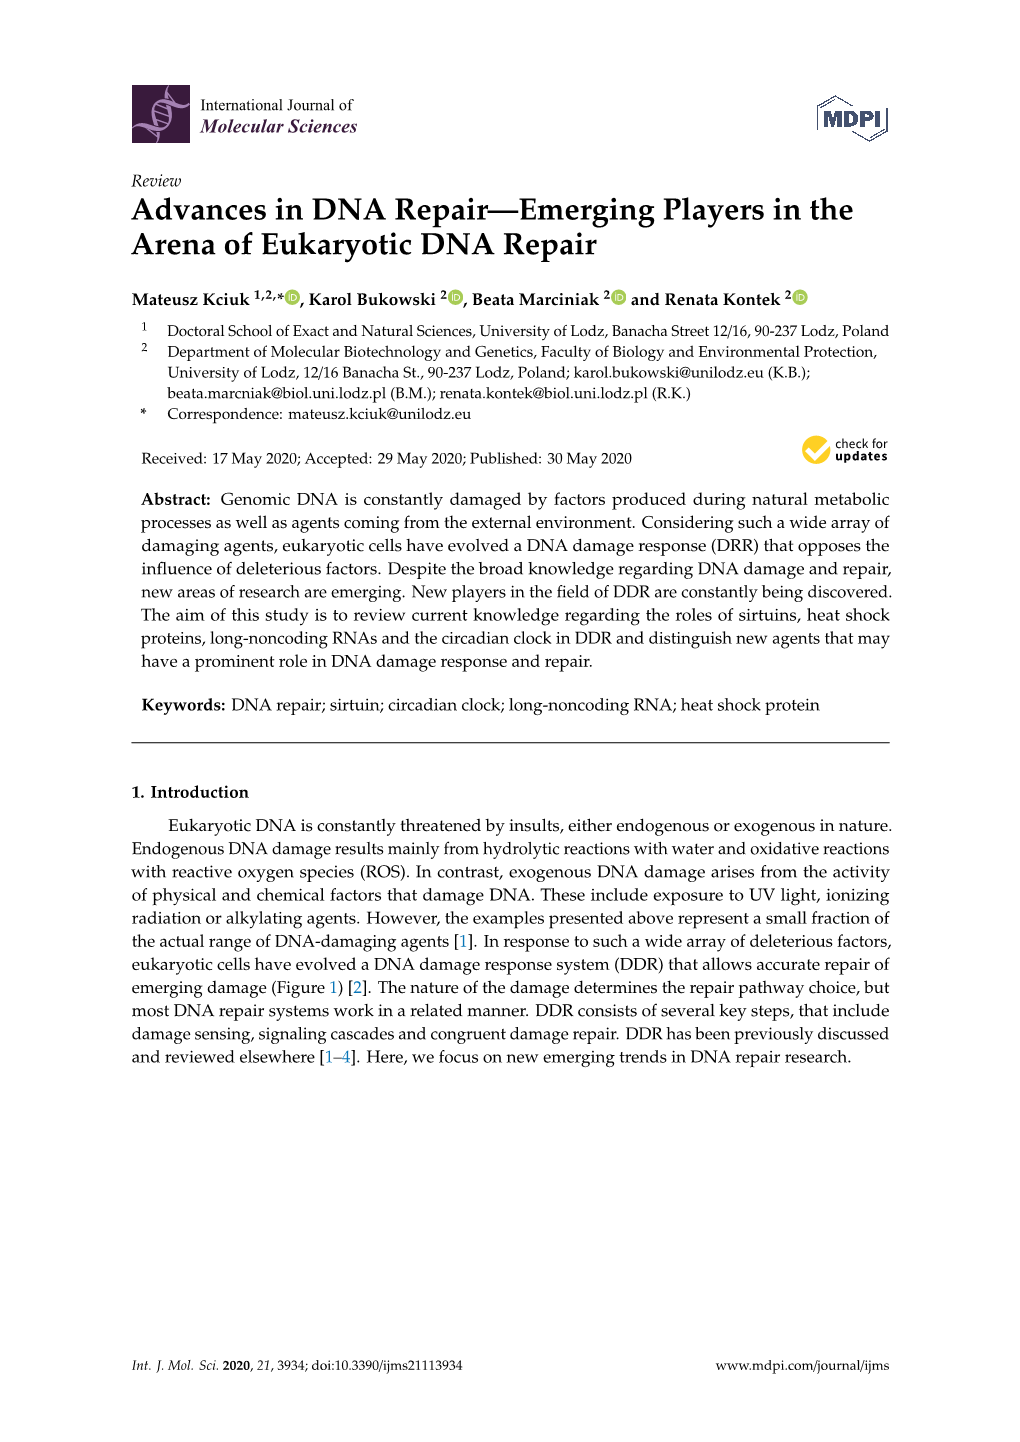 Advances in DNA Repair—Emerging Players in the Arena of Eukaryotic DNA Repair